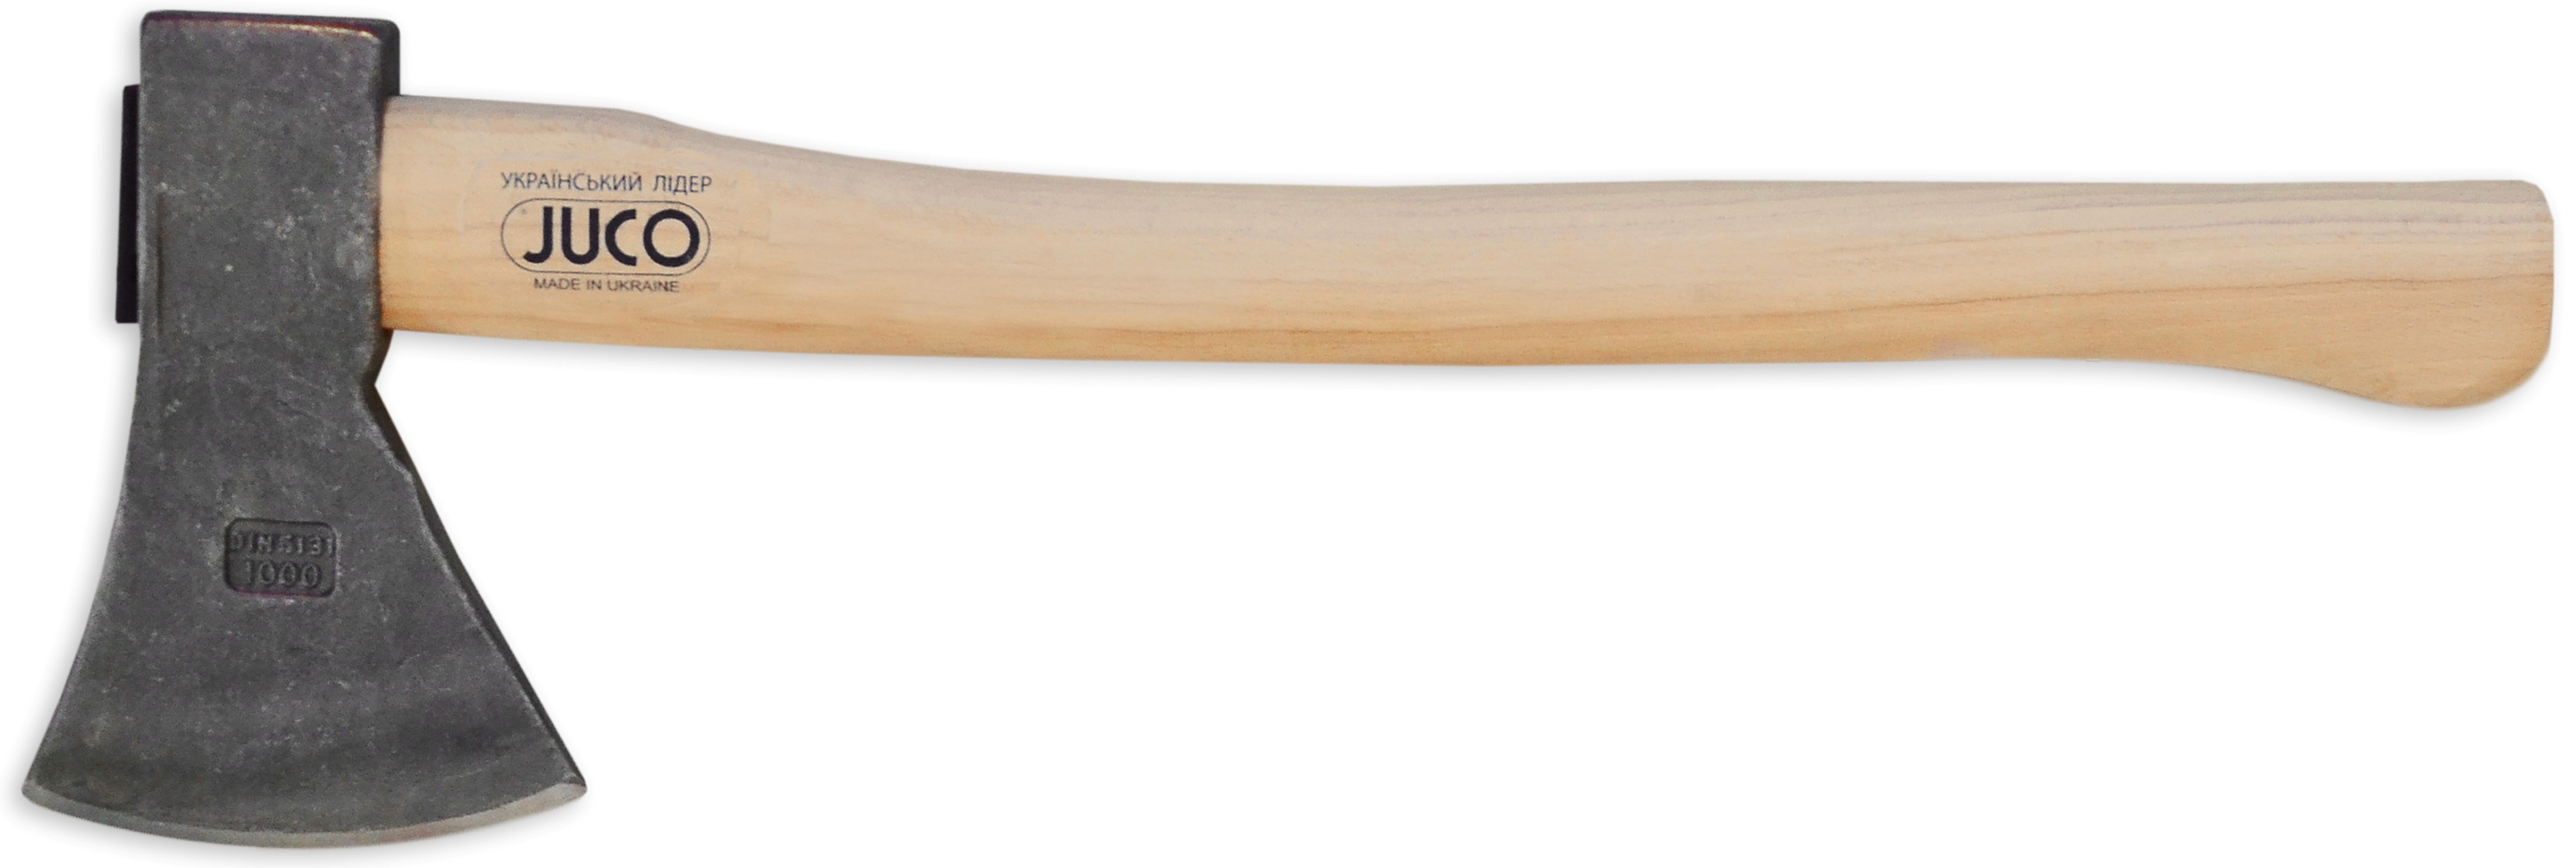 39-656 Топор с деревянной ручкой, JUCO (Украина), 1000 г